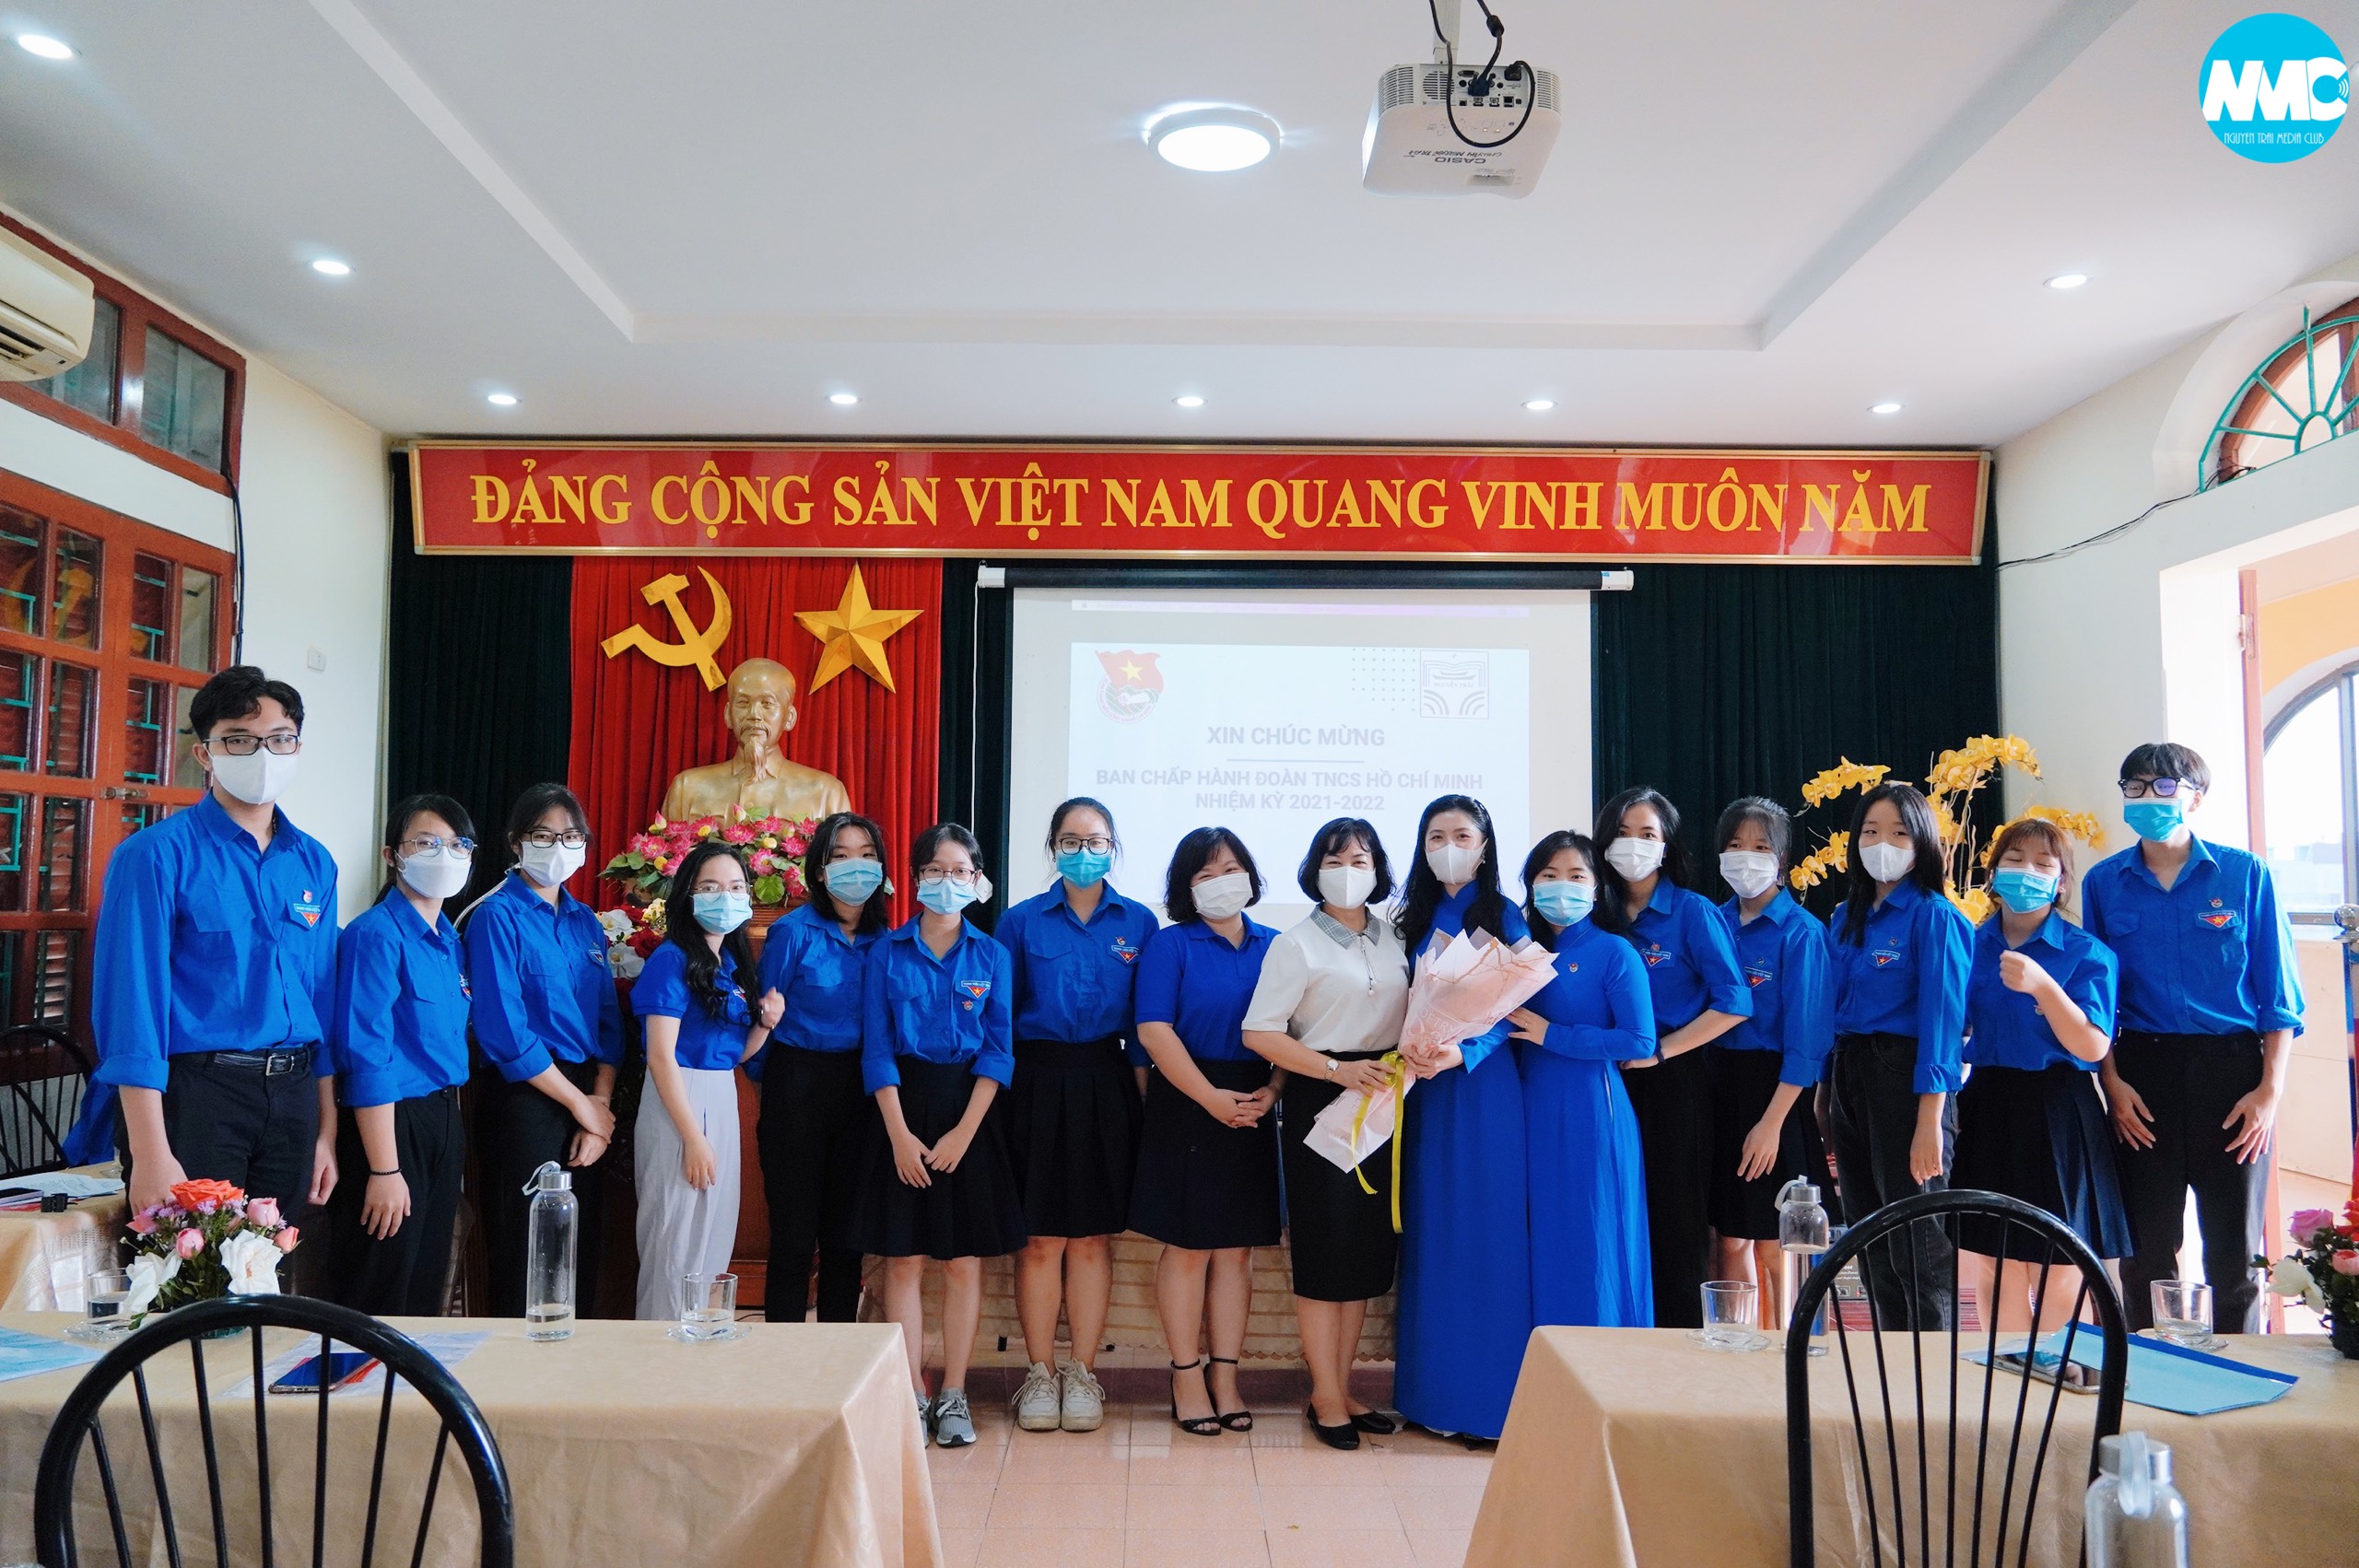 Tưng bừng chào đón Đại hội Đoàn trường THPT Chuyên Nguyễn Trãi nhiệm kỳ 2021 - 2022